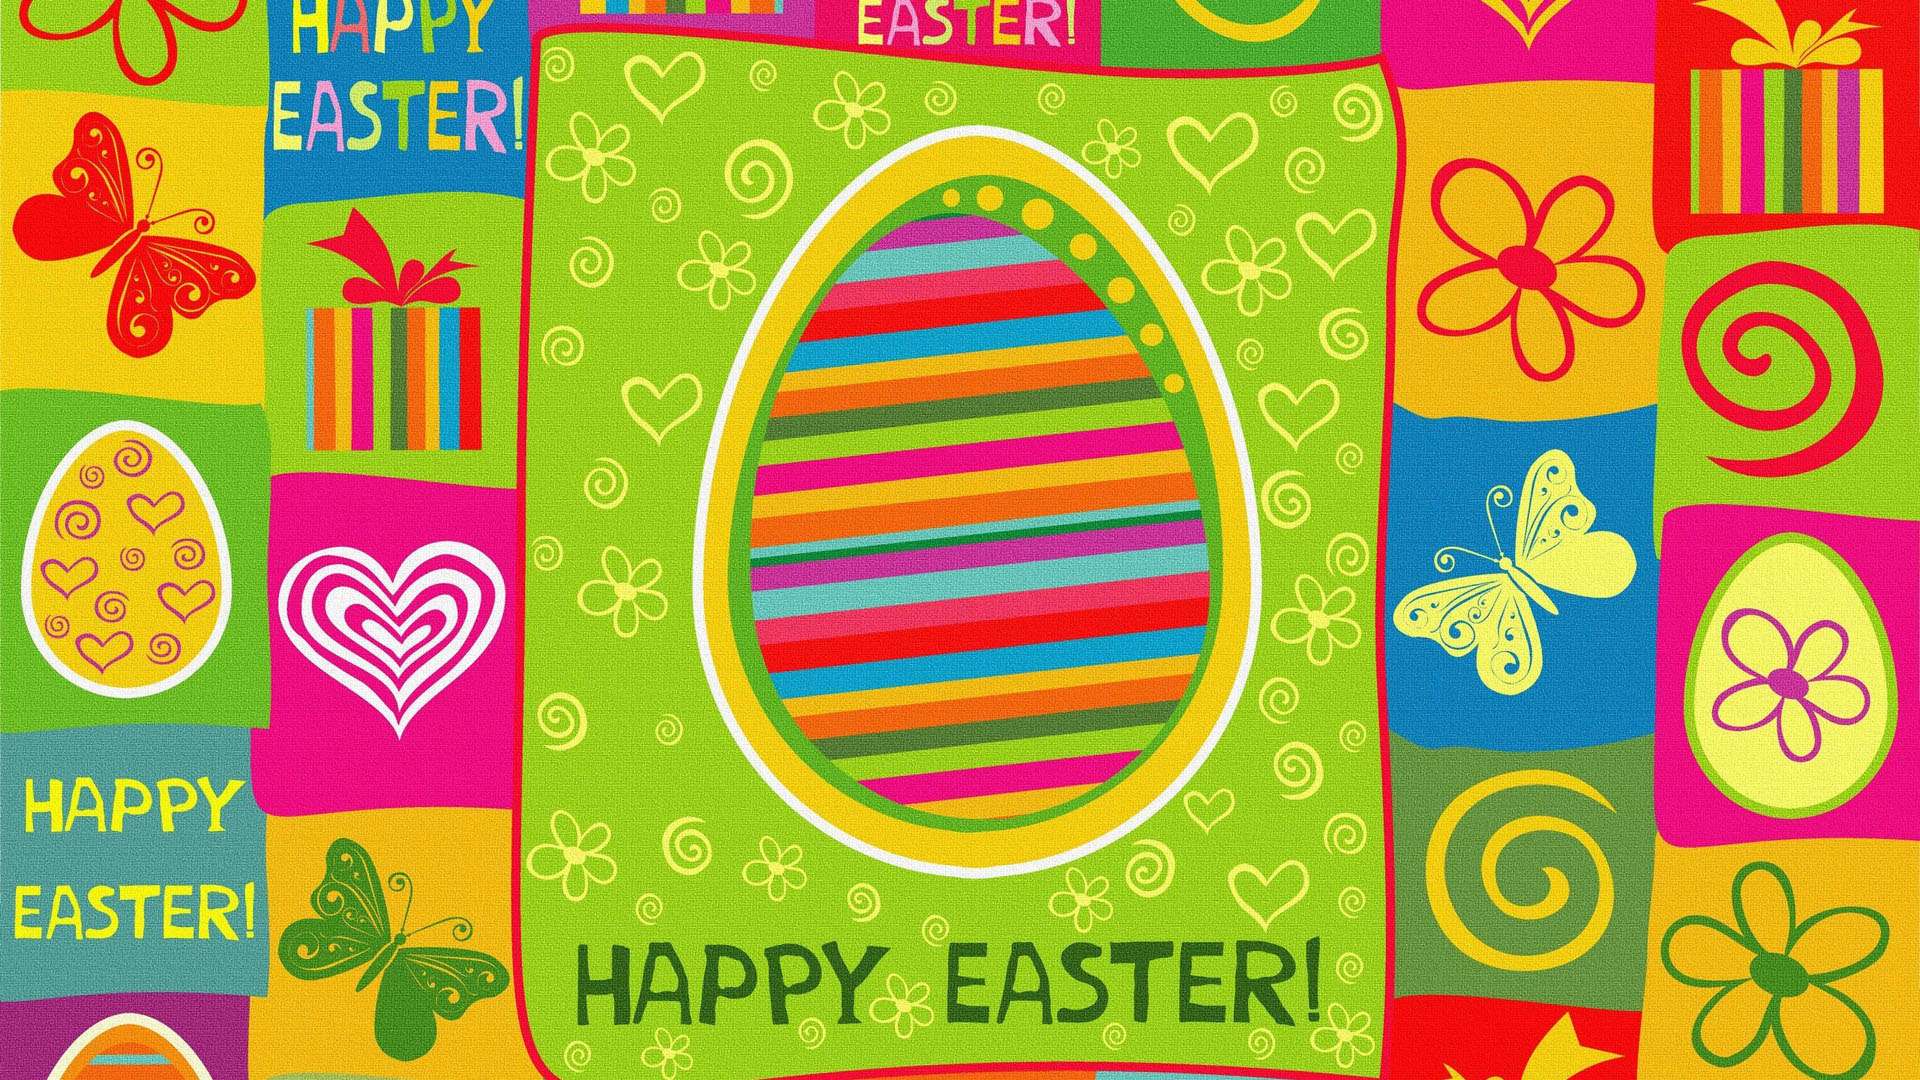 Colorful Happy Easter HD Wallpaper FullHDwpp Full